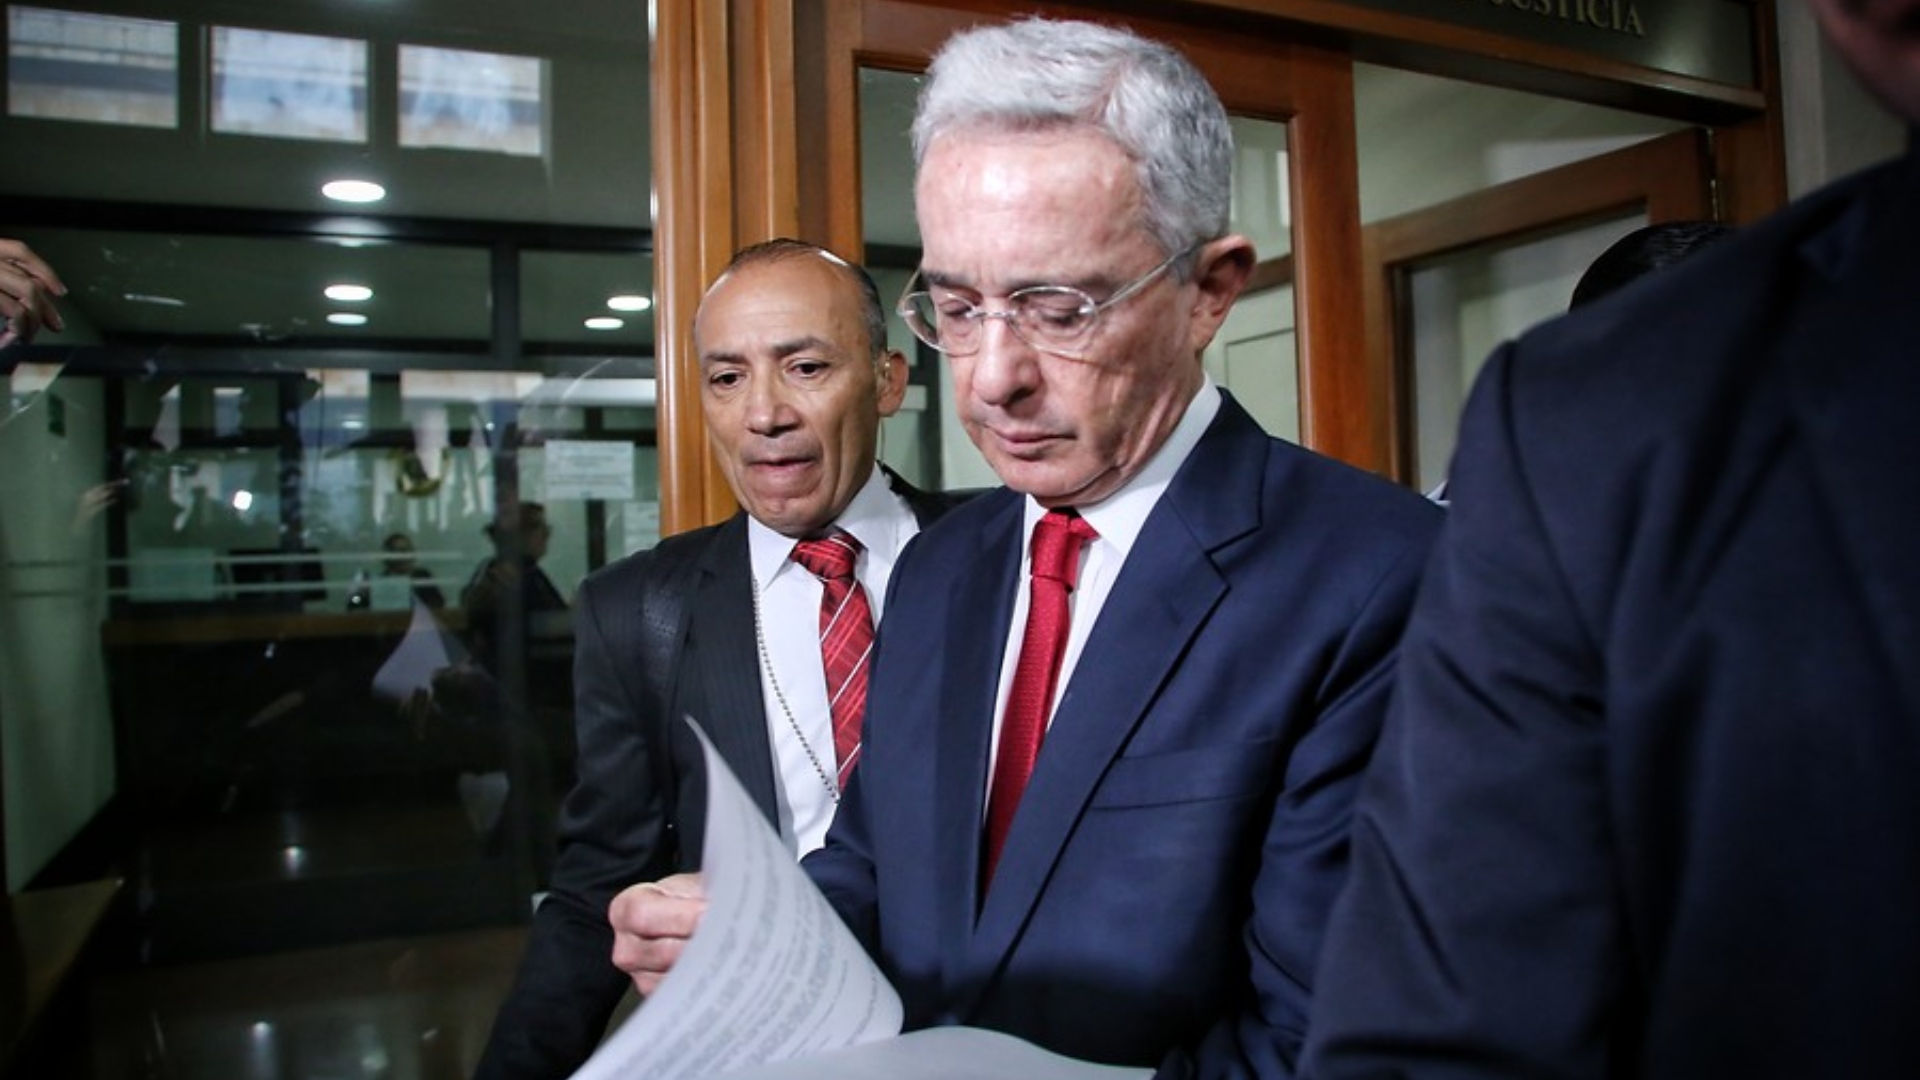 Así fue la intervención de Álvaro Uribe Vélez para sustentar su apelación ante el Tribunal de Bogotá: “Testigo mentiroso”